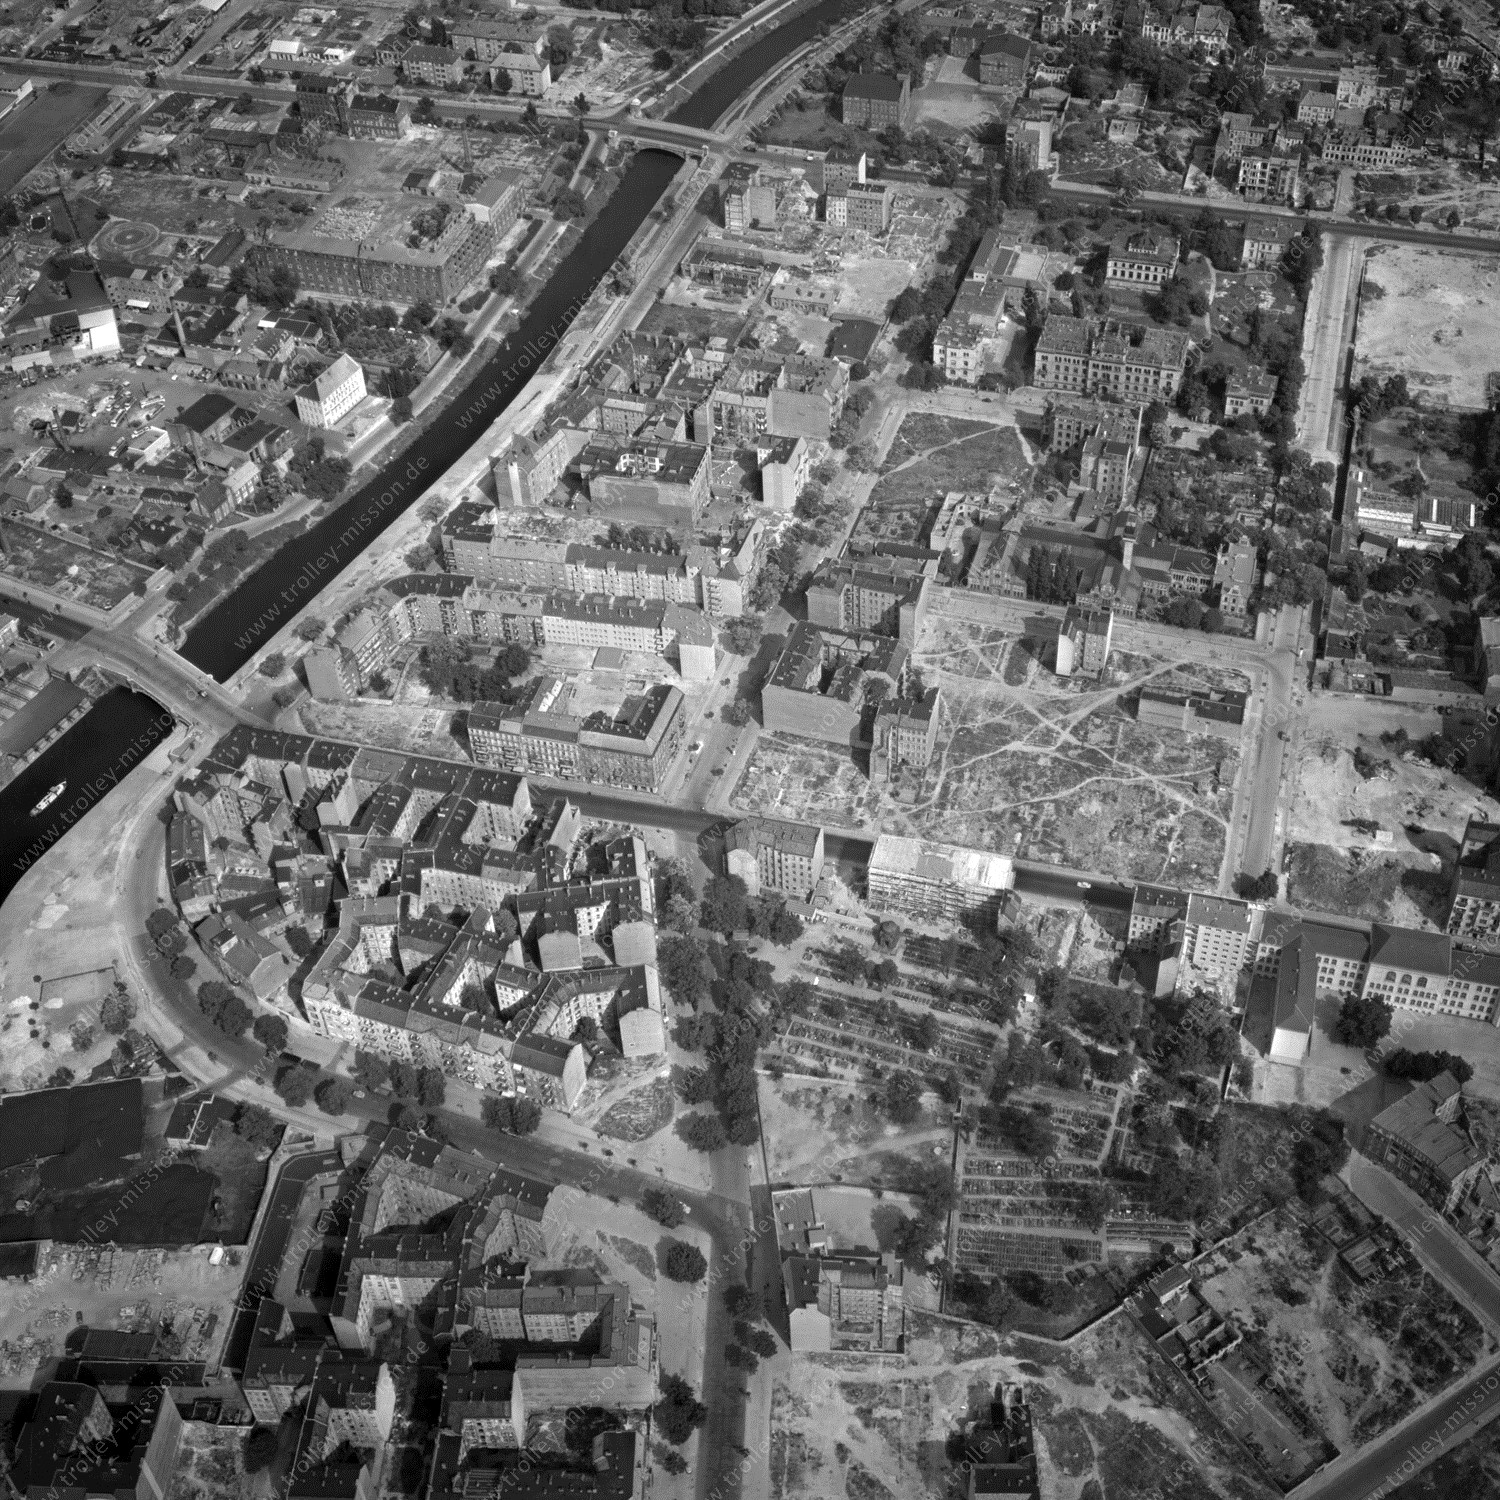 Alte Fotos und Luftbilder von Berlin - Luftbildaufnahme Nr. 07 - Historische Luftaufnahmen von West-Berlin aus dem Jahr 1954 - Flugstrecke Tango